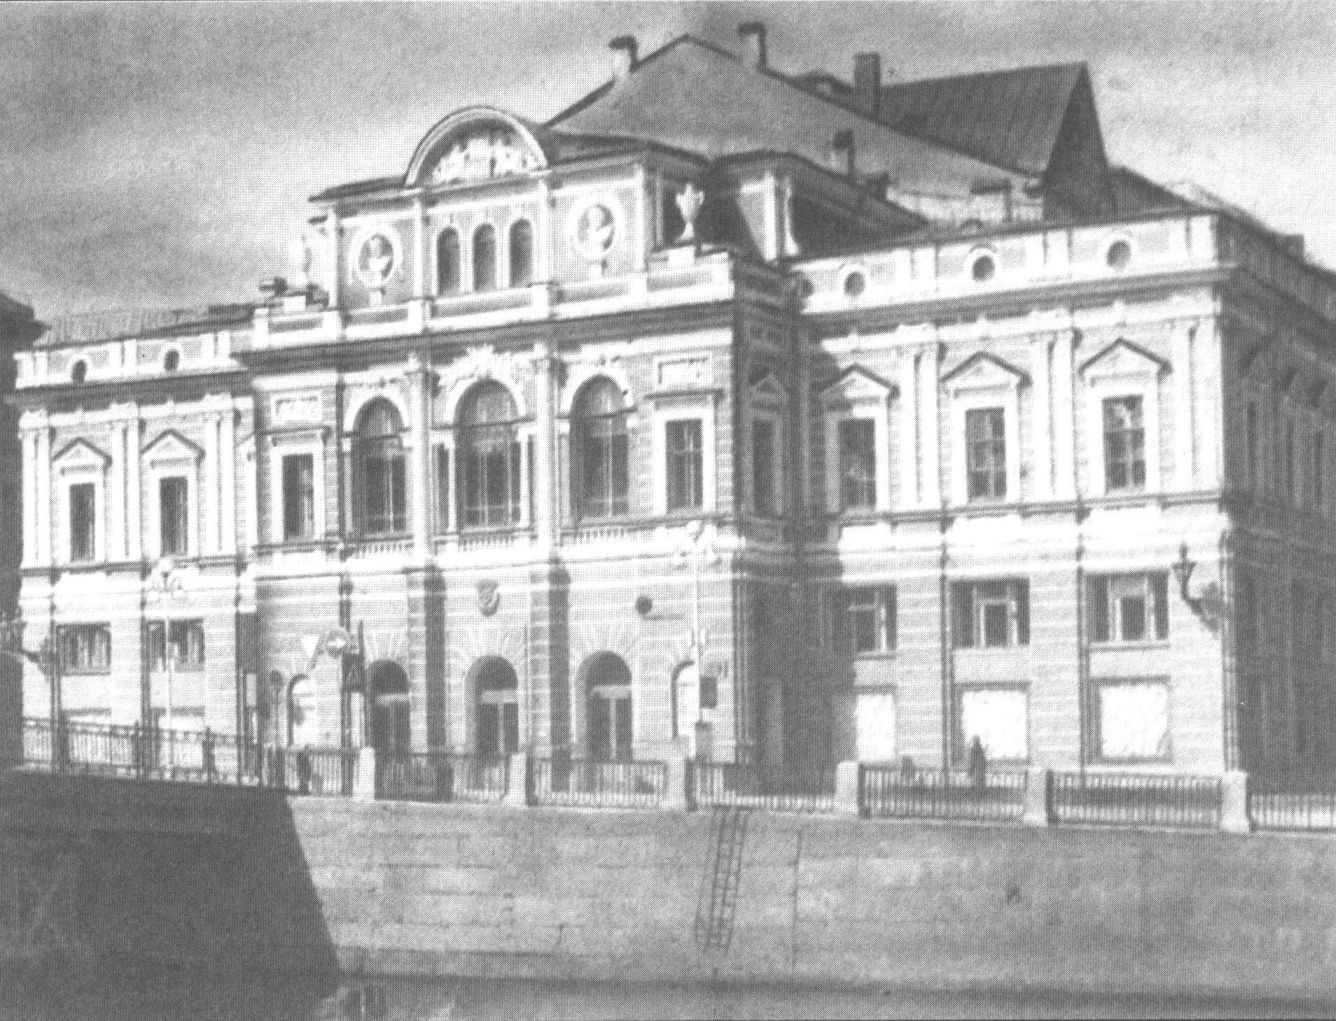 Советская 3 театр